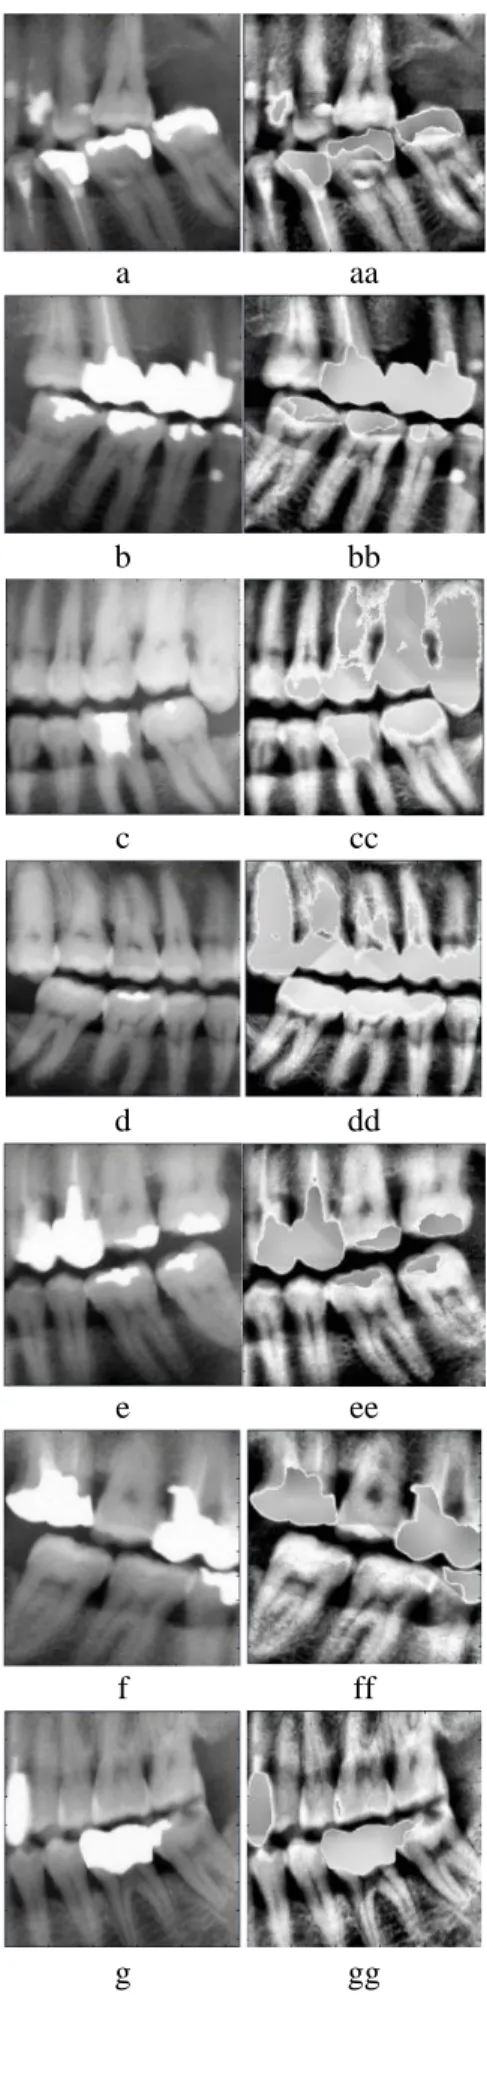 Gambar  3  adalah  contoh  hasil  pemisahan  gigi  dengan menggunakan Integral Projection biasa  dan  dengan  menggunakan  Integral  Projection  yang dimodifikasi